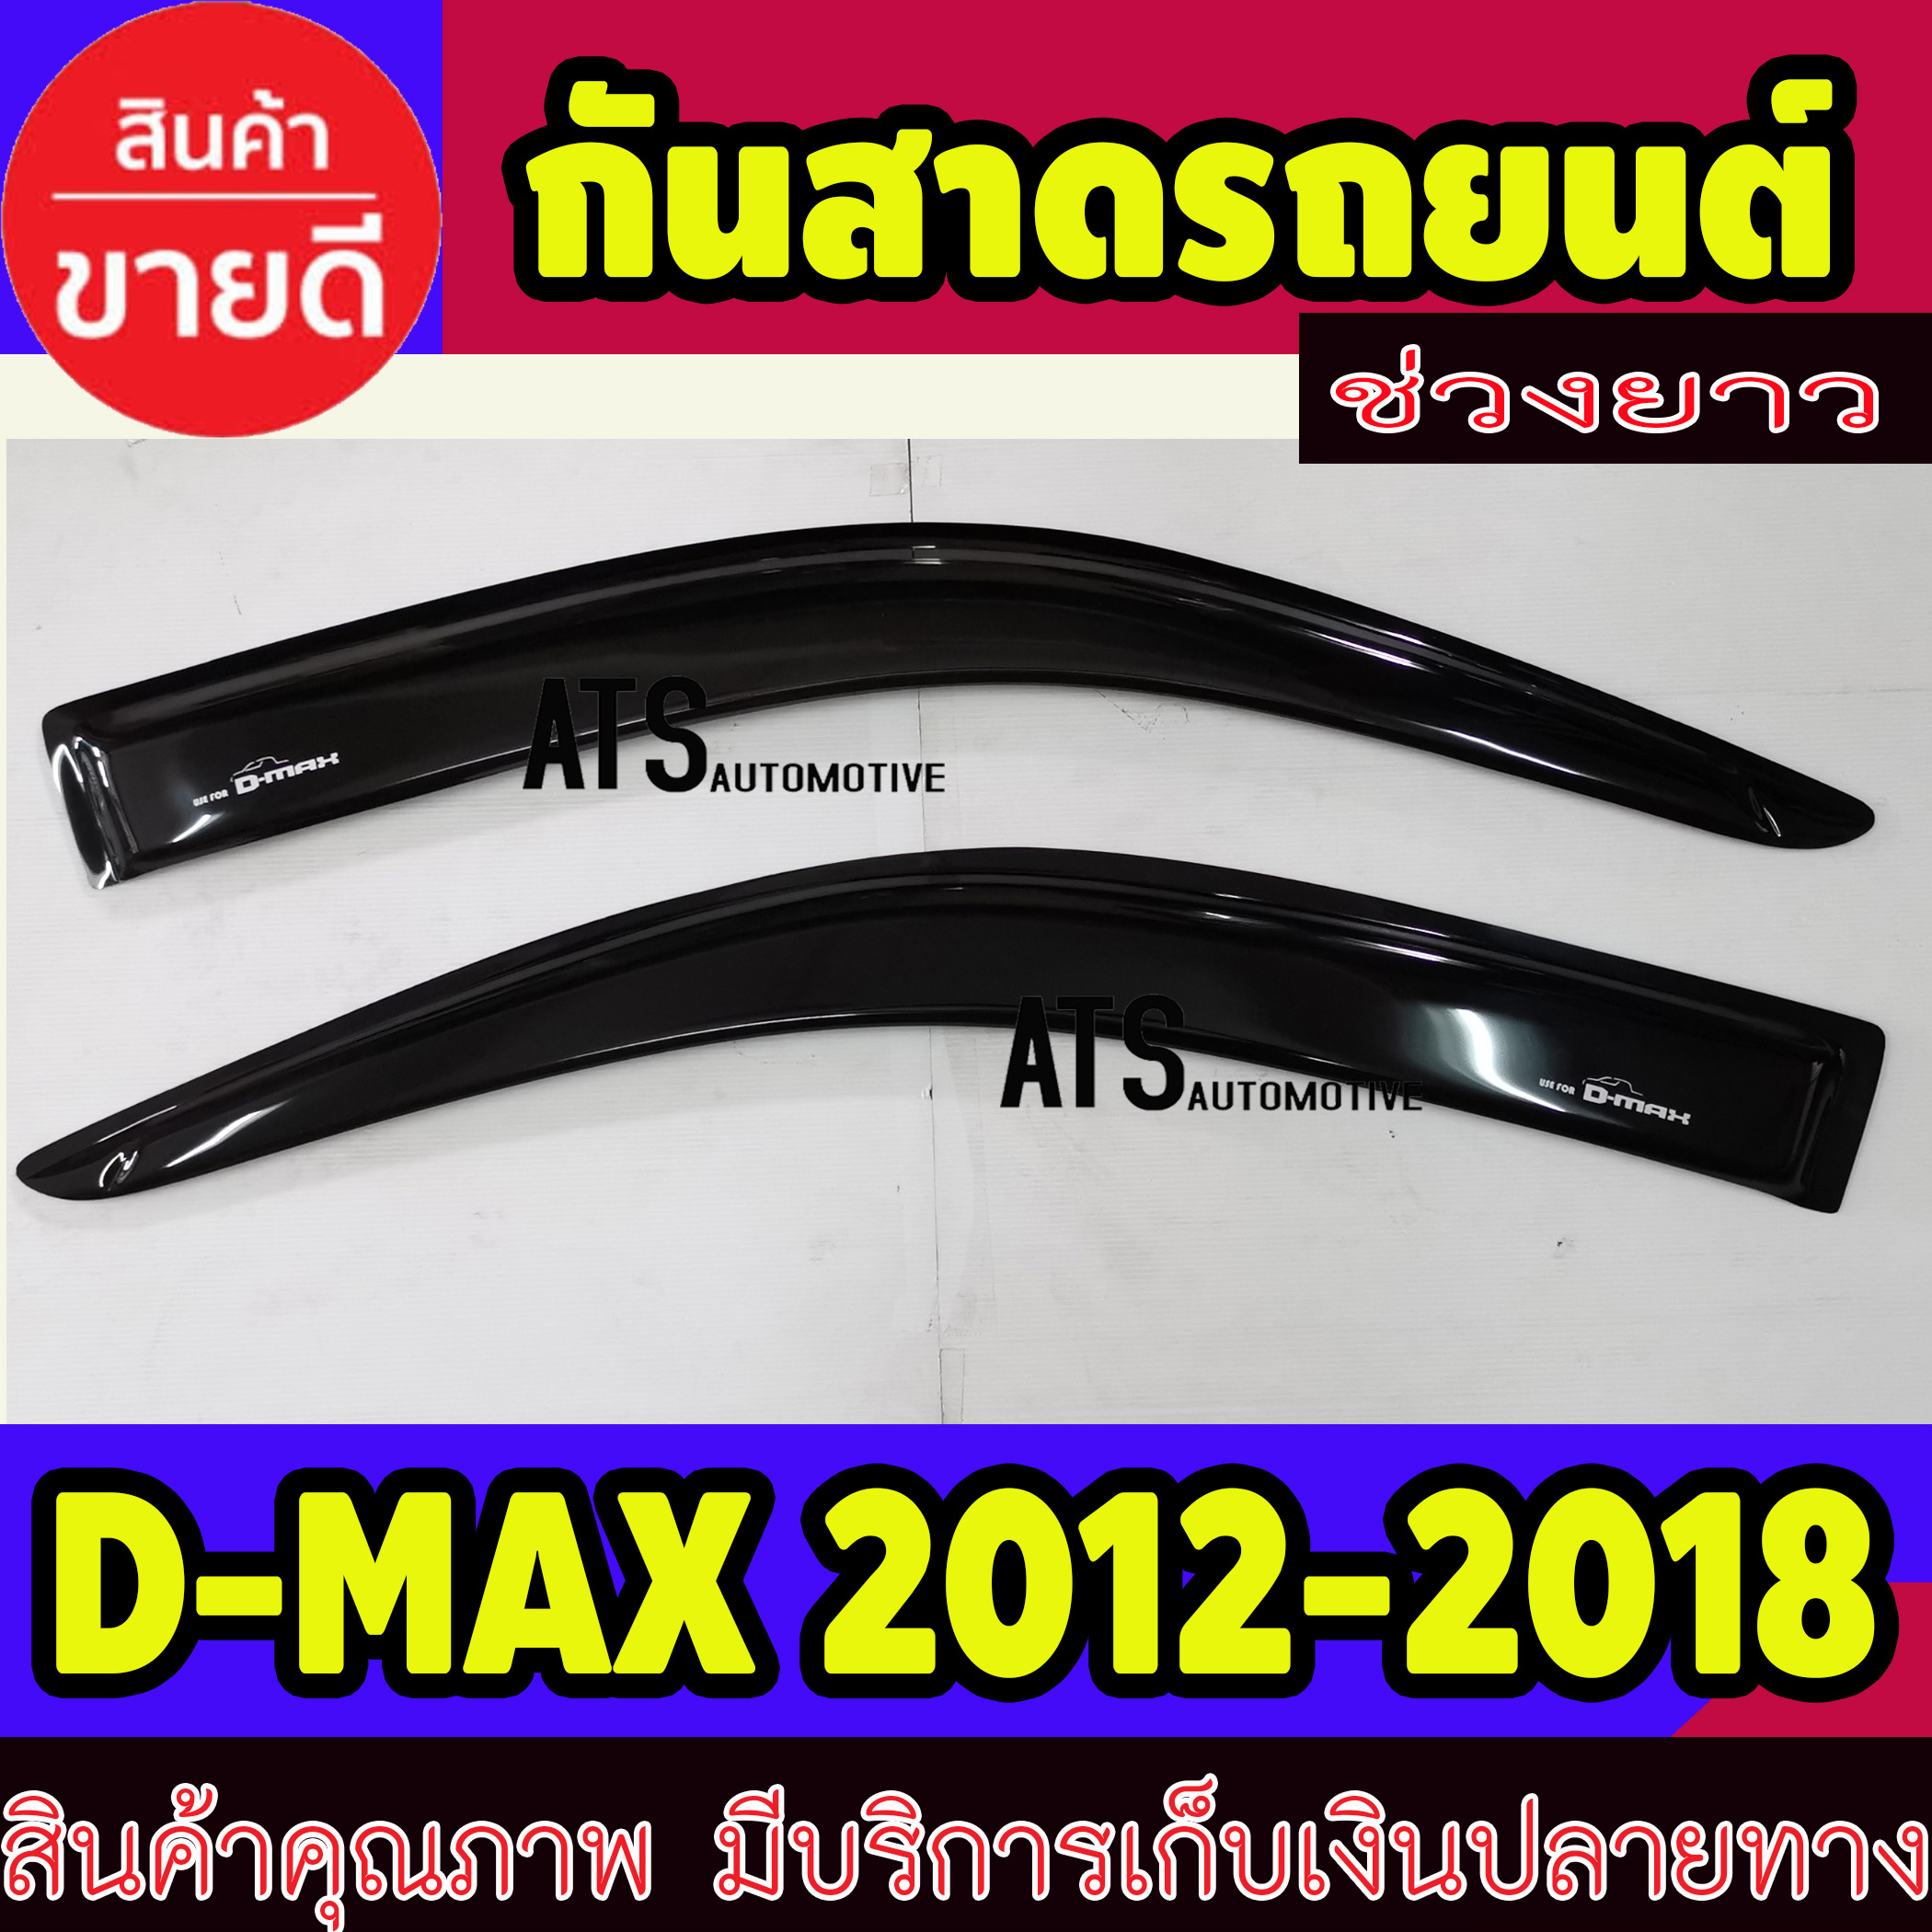 คิ้วกันสาดประตู คิ้วกันสาด รุ่นช่วงยาว 2 ชิ้น สีดำ อีซูซุ ดีแม็กซ์ Isuzu D-MAX DMAX 2012 2013 2014 2015 2016 2017 2018